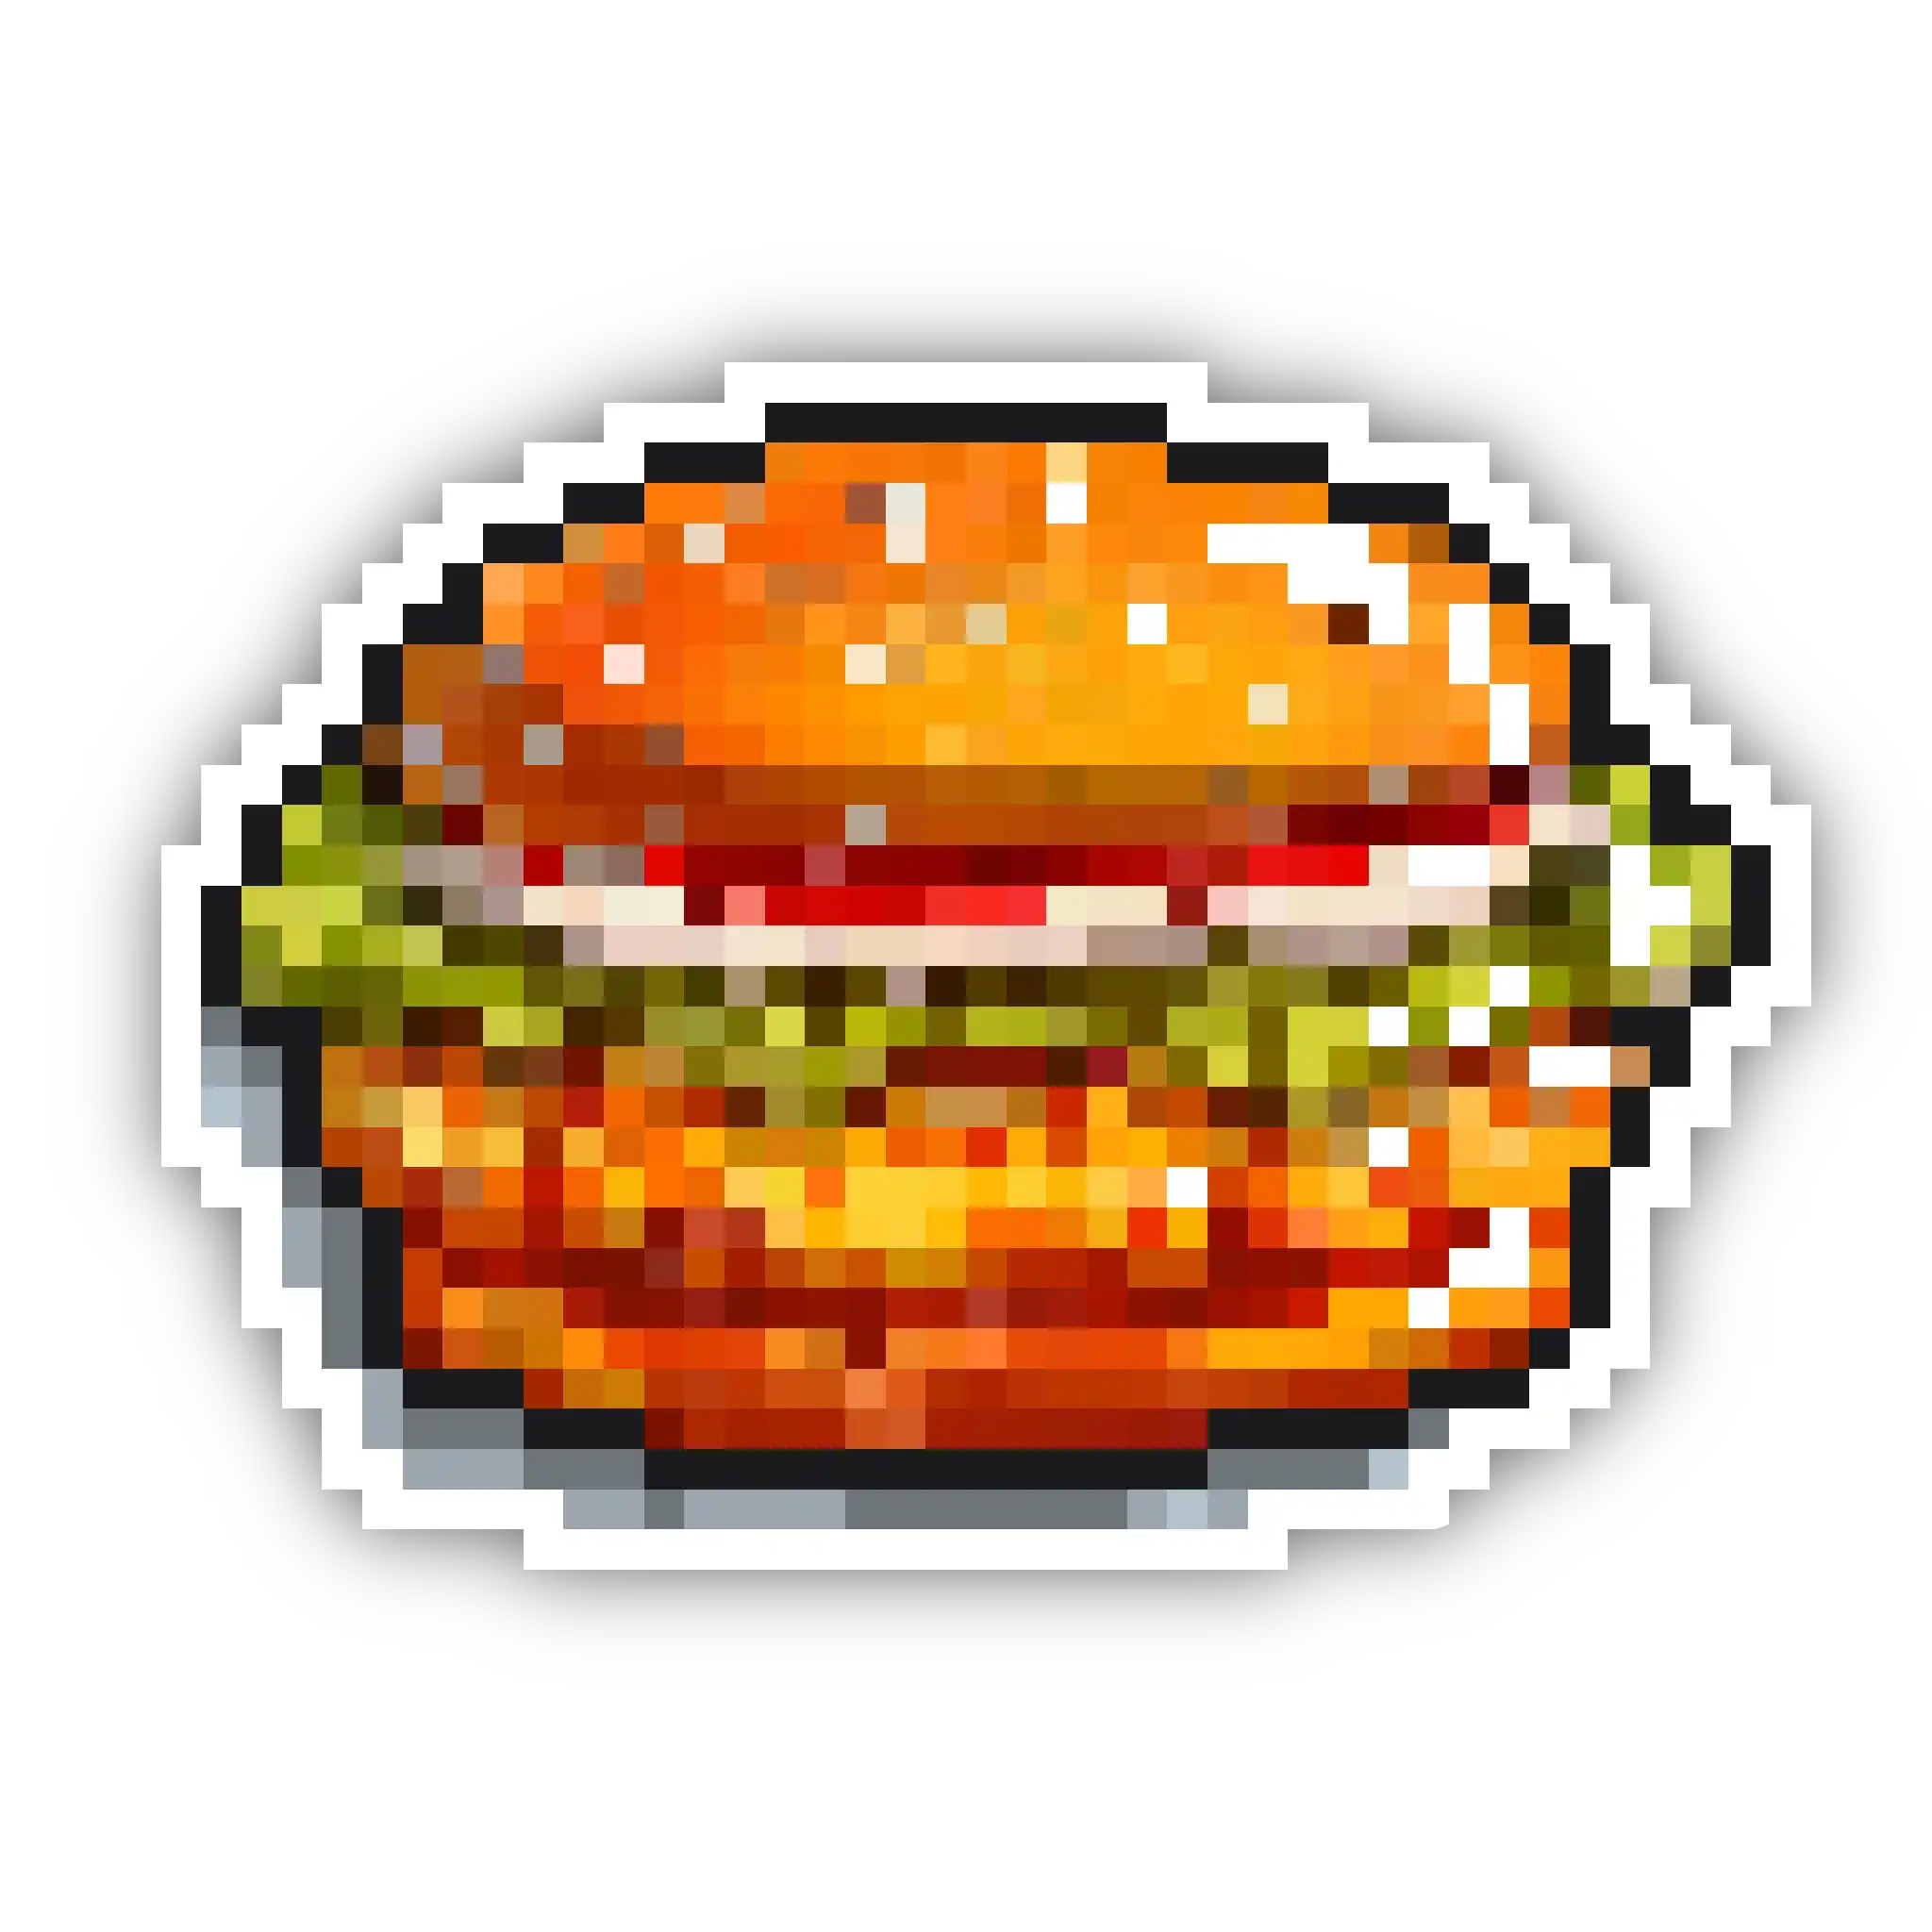 Team Member: Burger